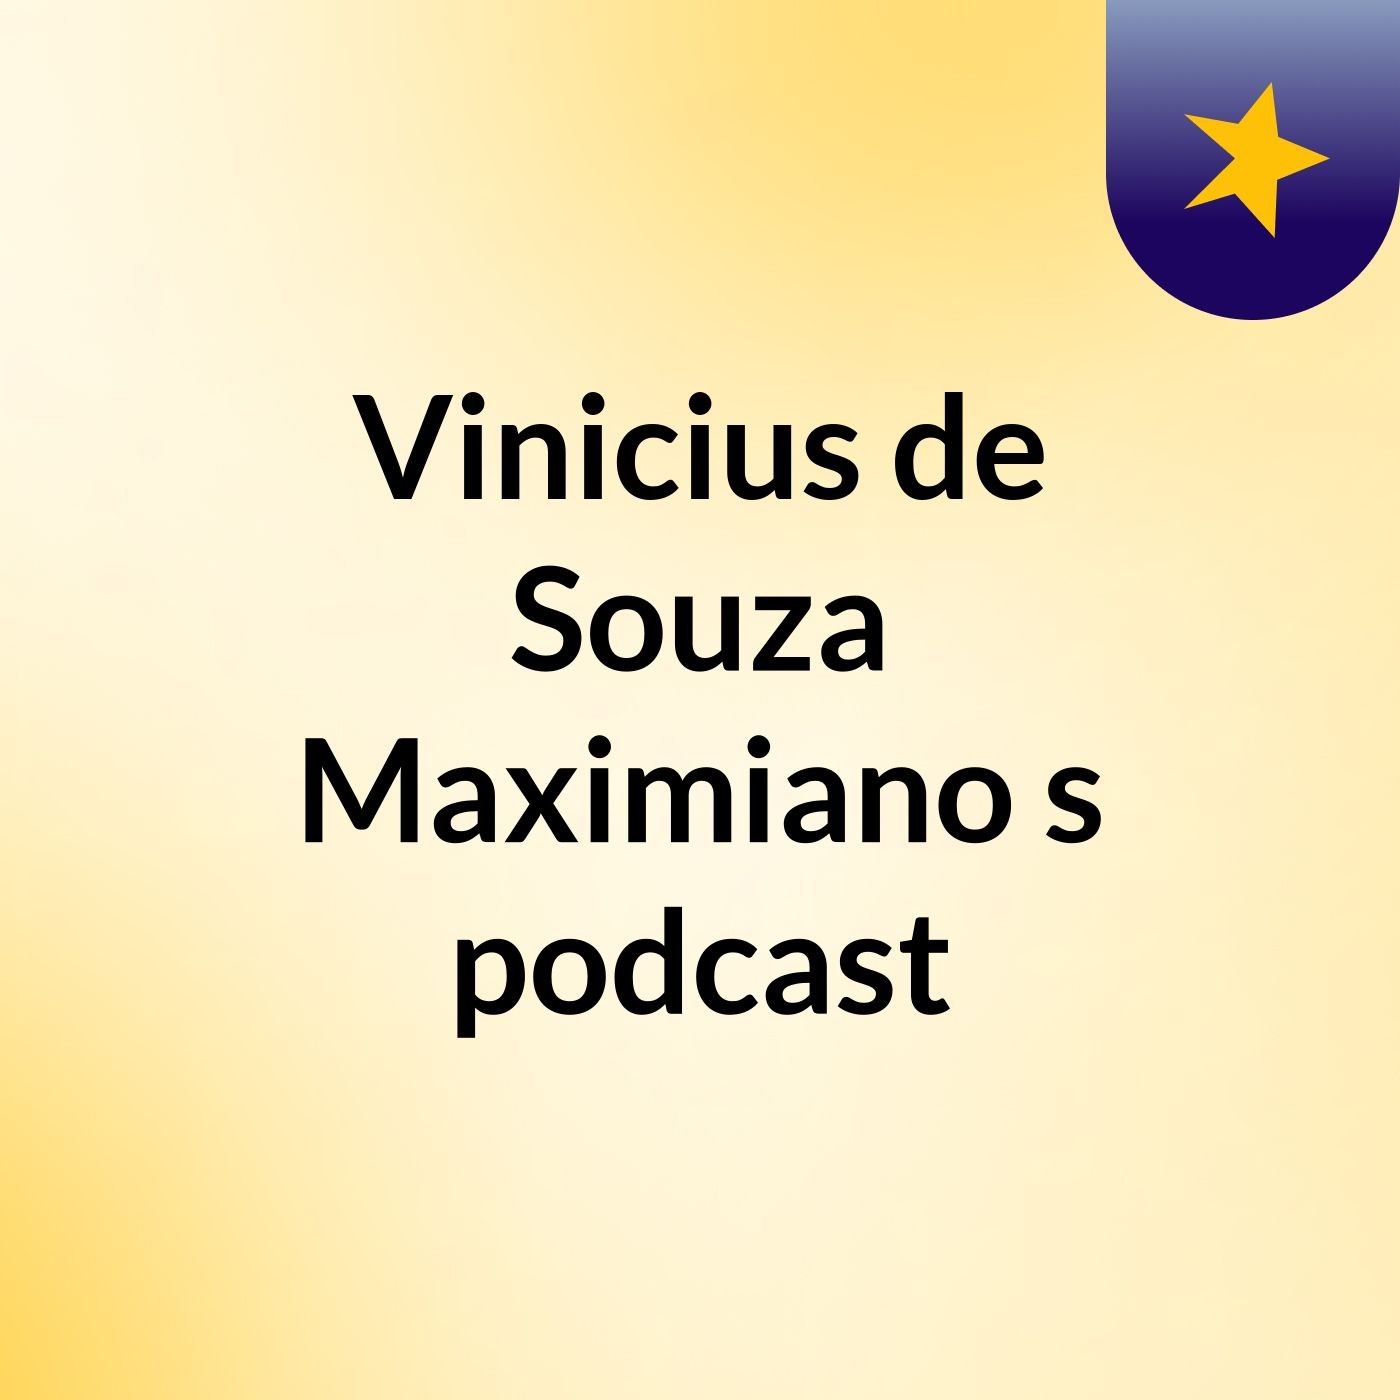 Vinicius de Souza Maximiano's podcast